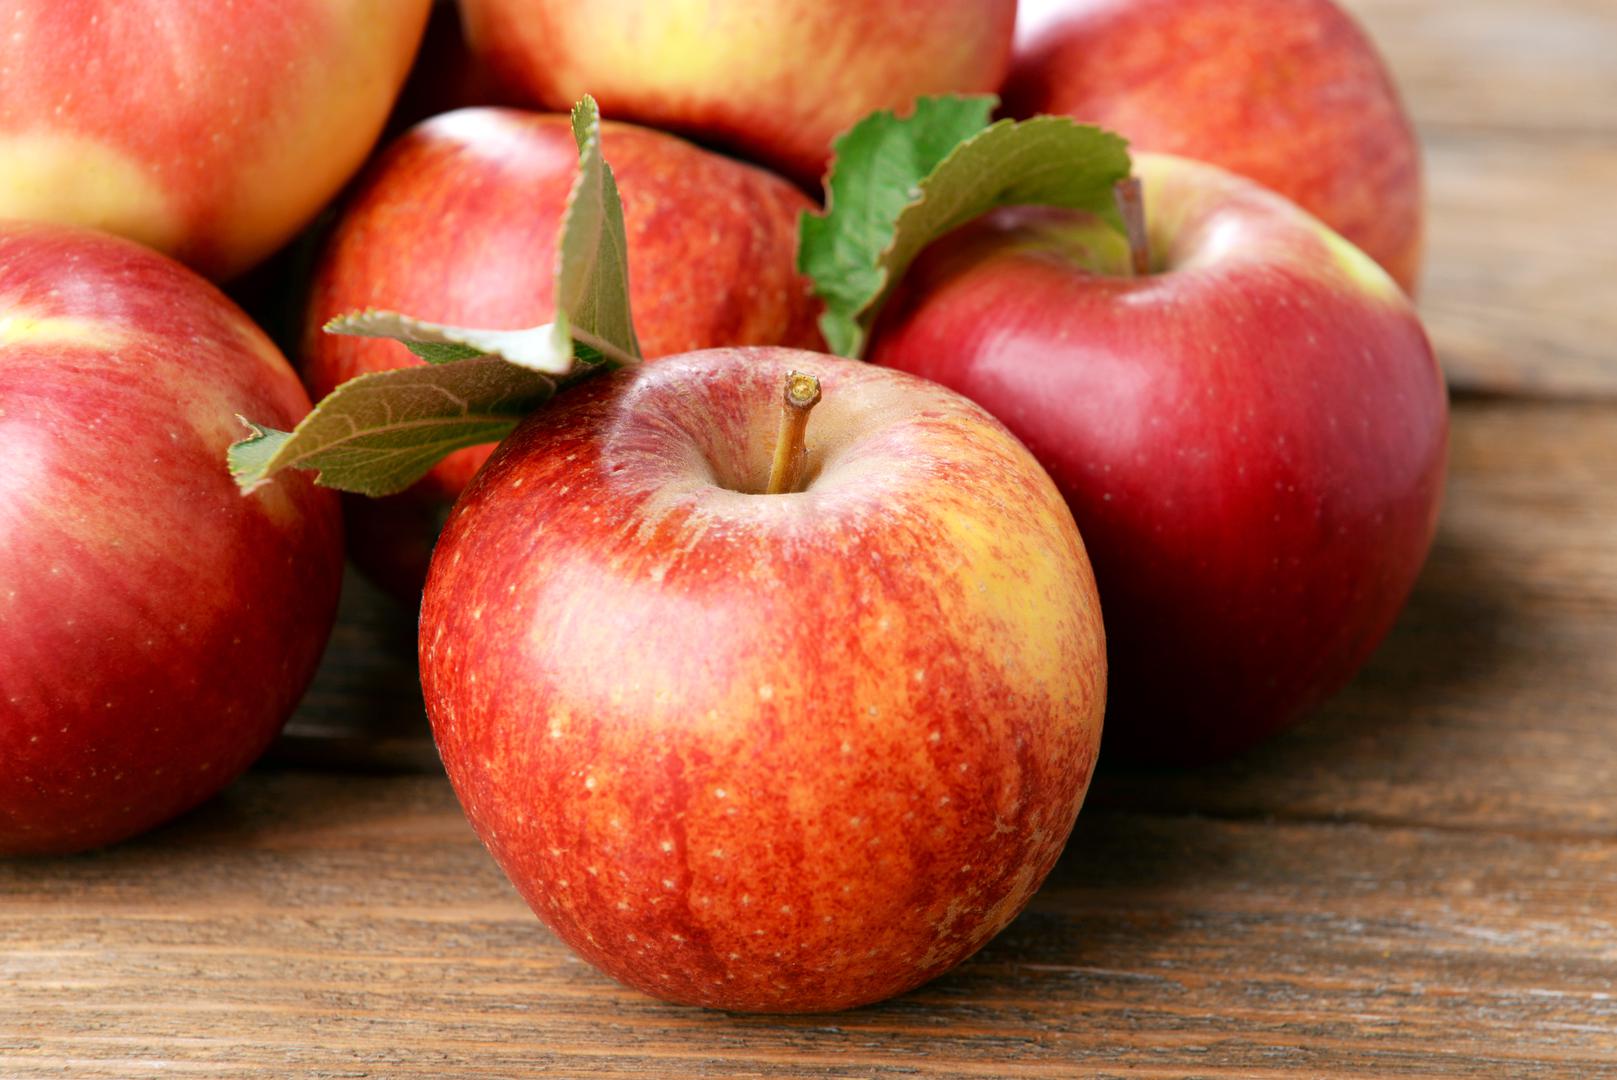 Voće i povrće nezaobilazno je u zdravoj prehrani, a jabuke su posebno bitne kod unosa vlakana.